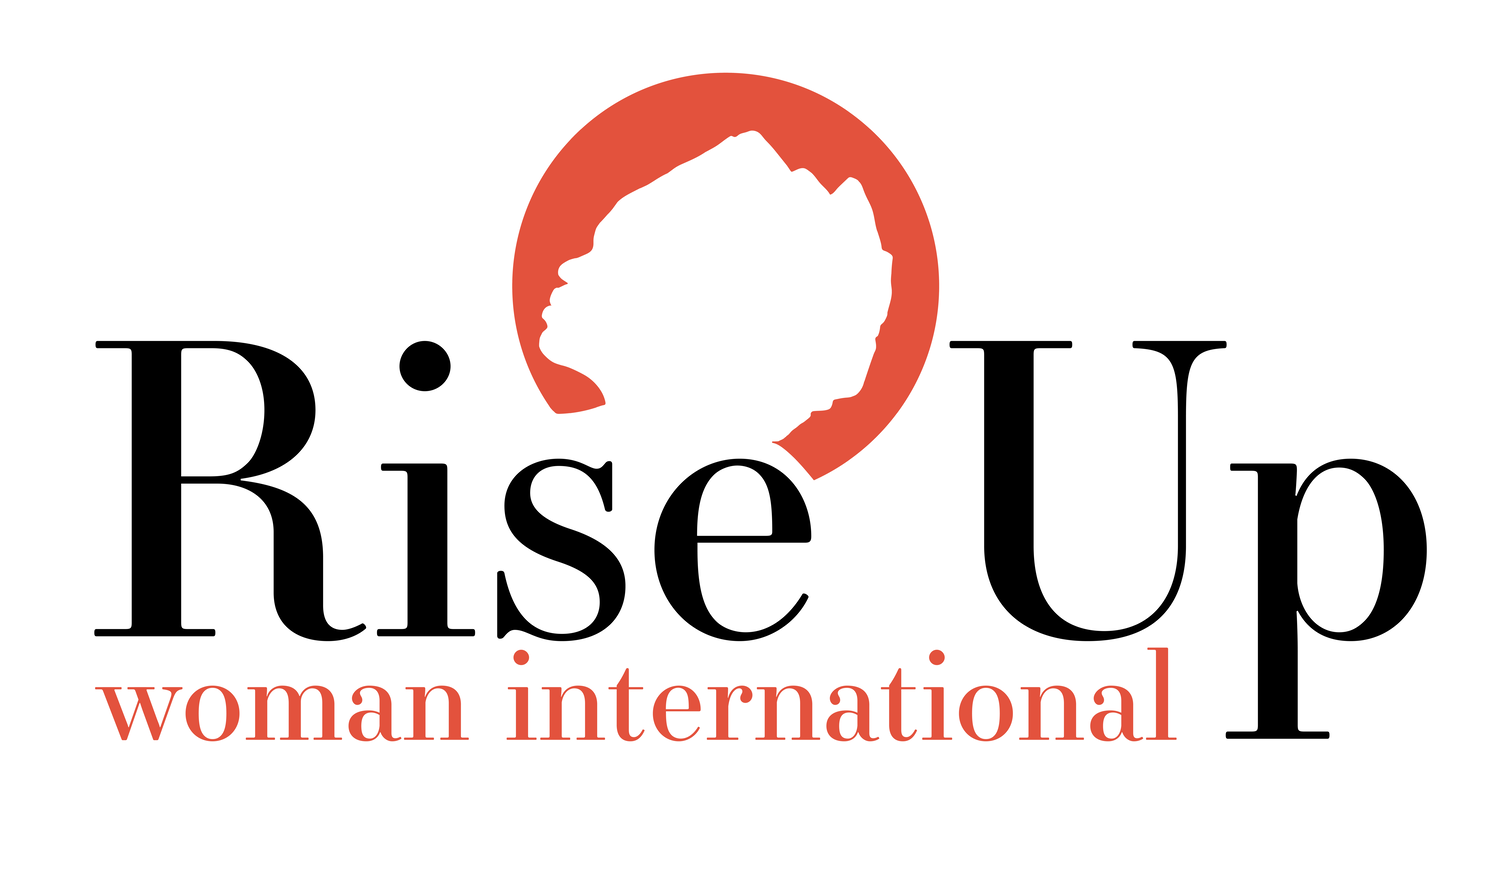 Rise Up Woman International